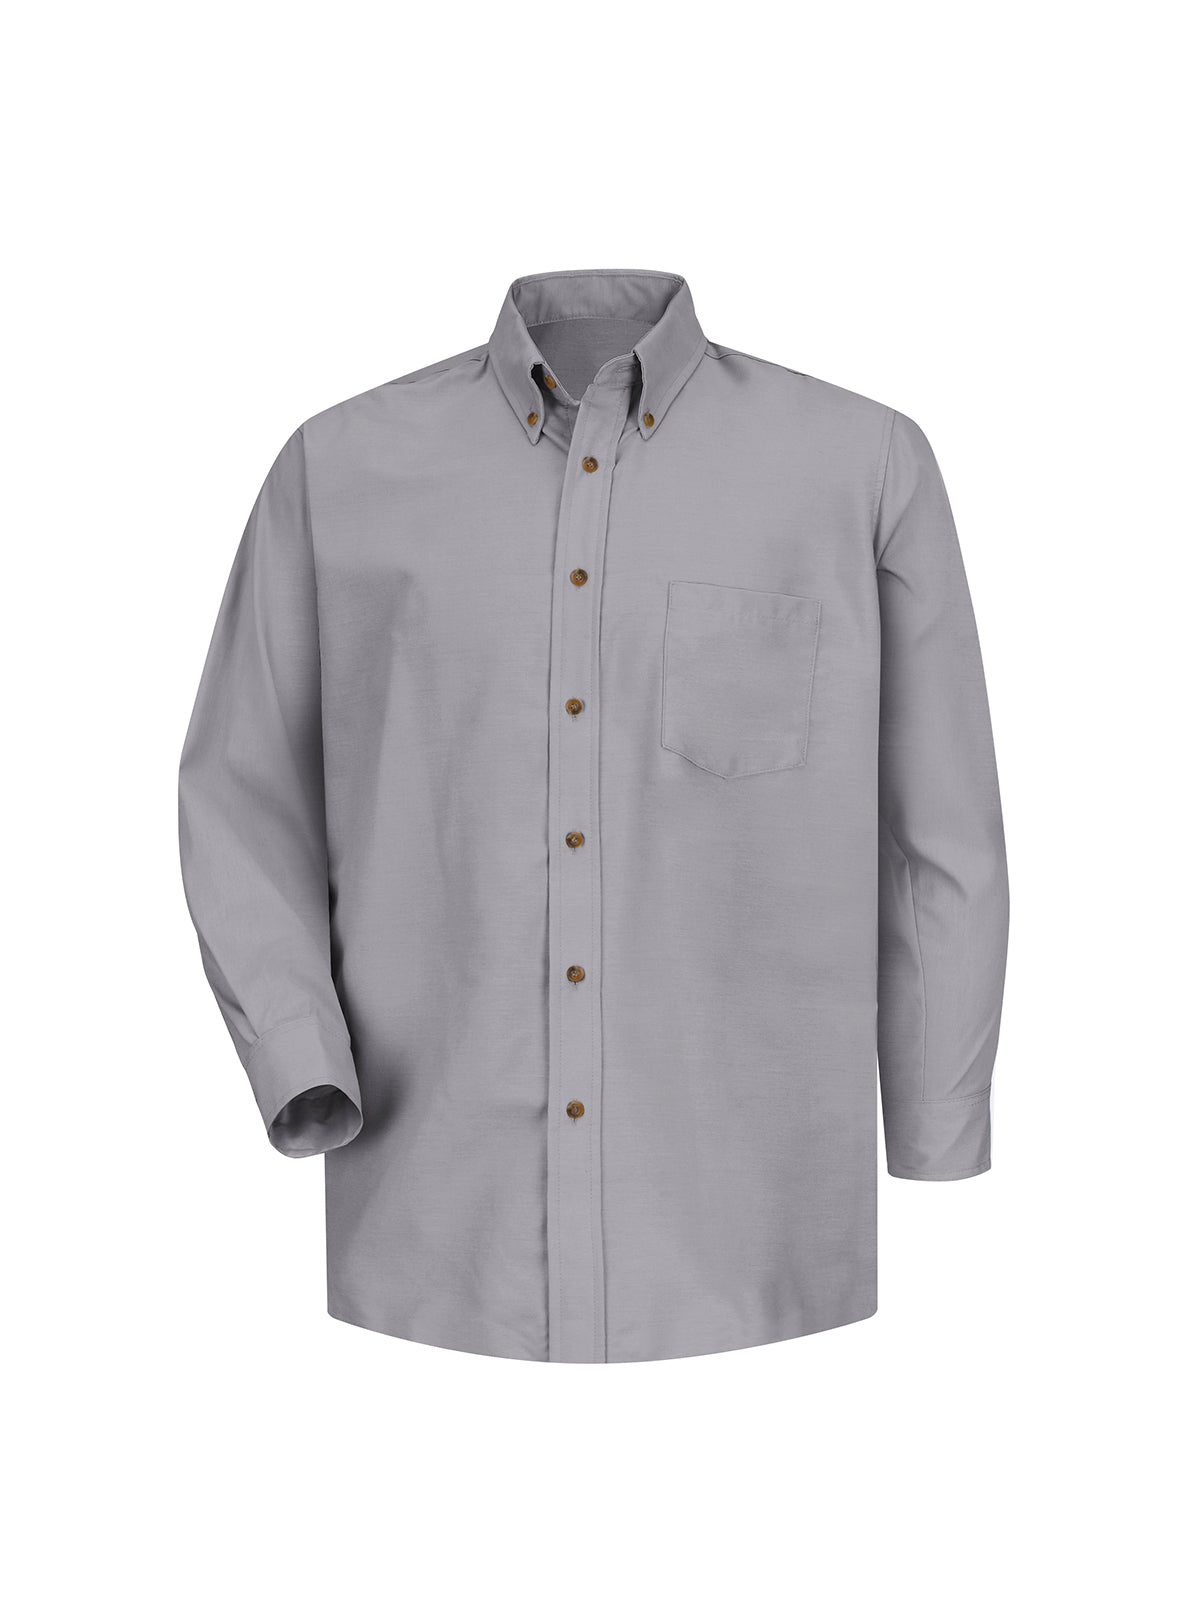 Men's Long Sleeve Button Down Poplin Shirt